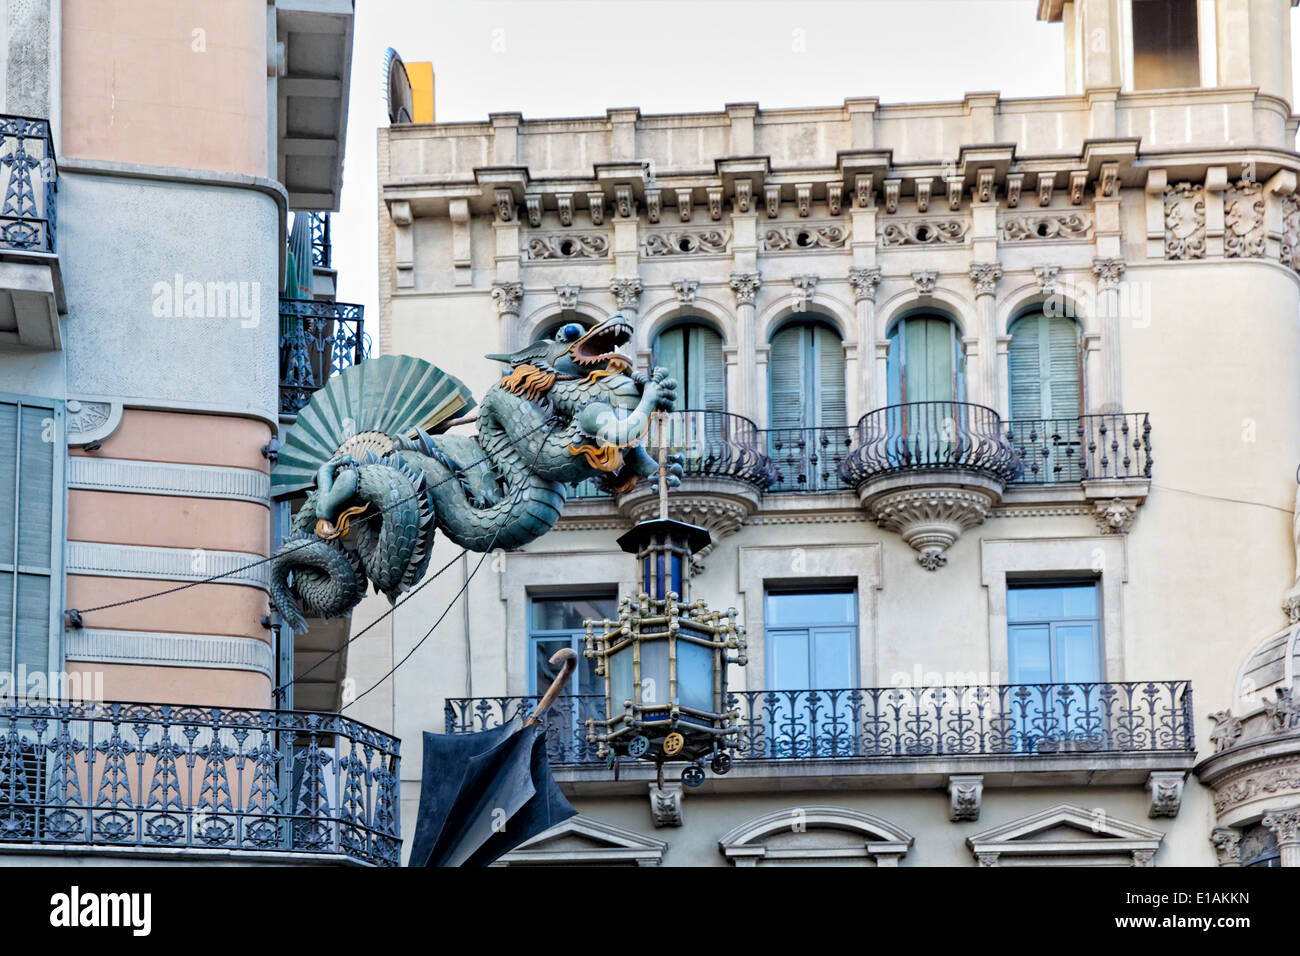 Sculpture Dragon chinois sur les murs d'une maison décorée de parapluies, Bruno Quadras Building, Las Ramblas, Barcelone Banque D'Images